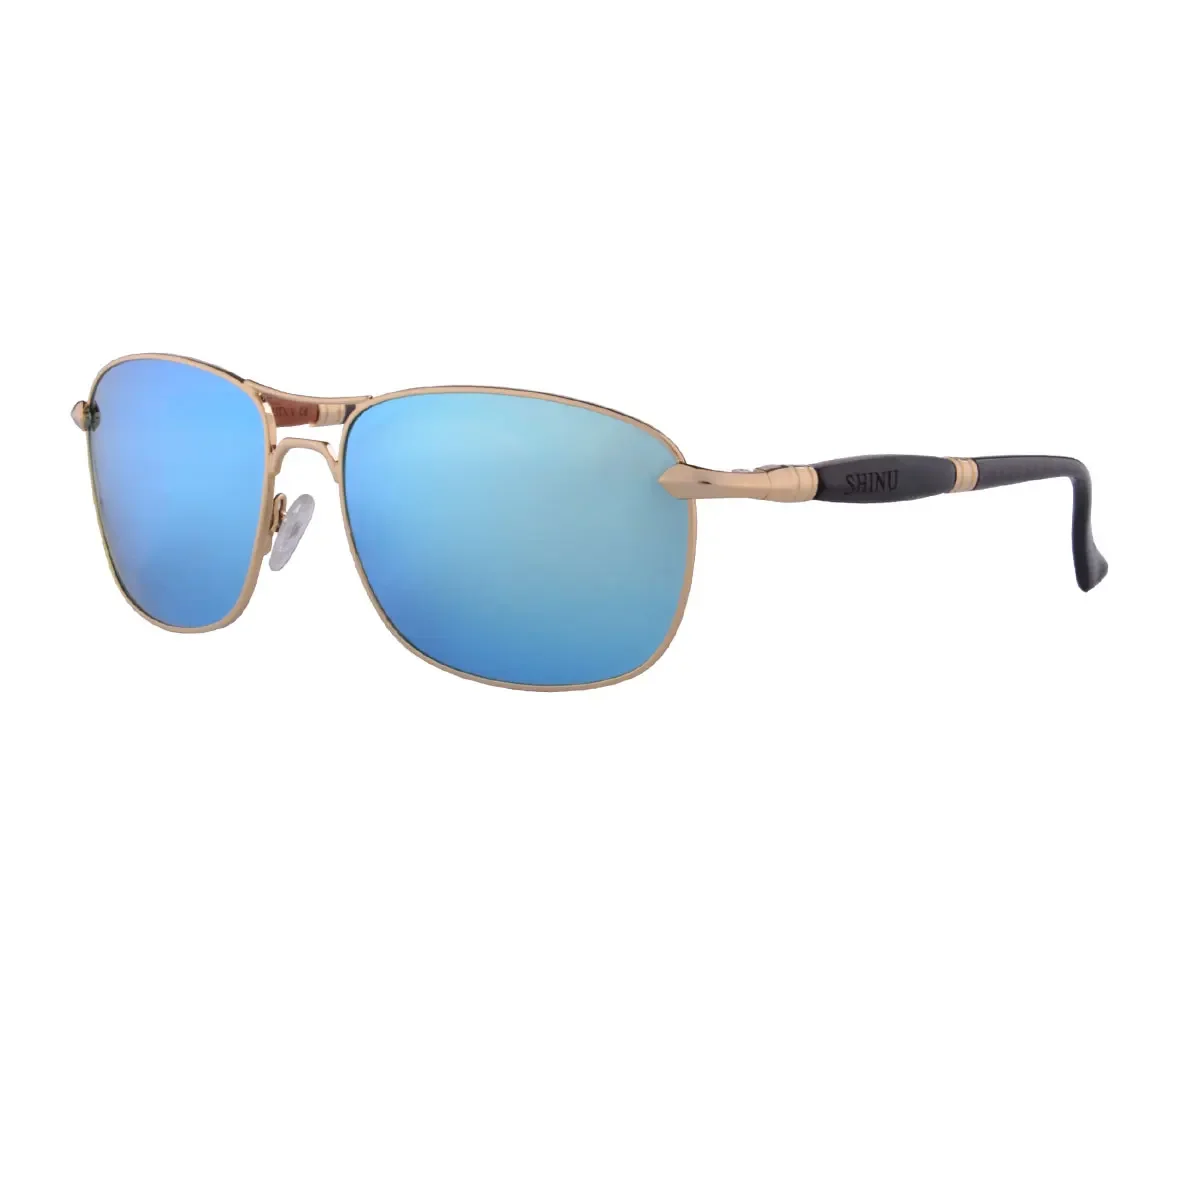 

polarised sunglasses for men designer aviator sunglasses metal frame wooden glasses luxury brand sun glass for men